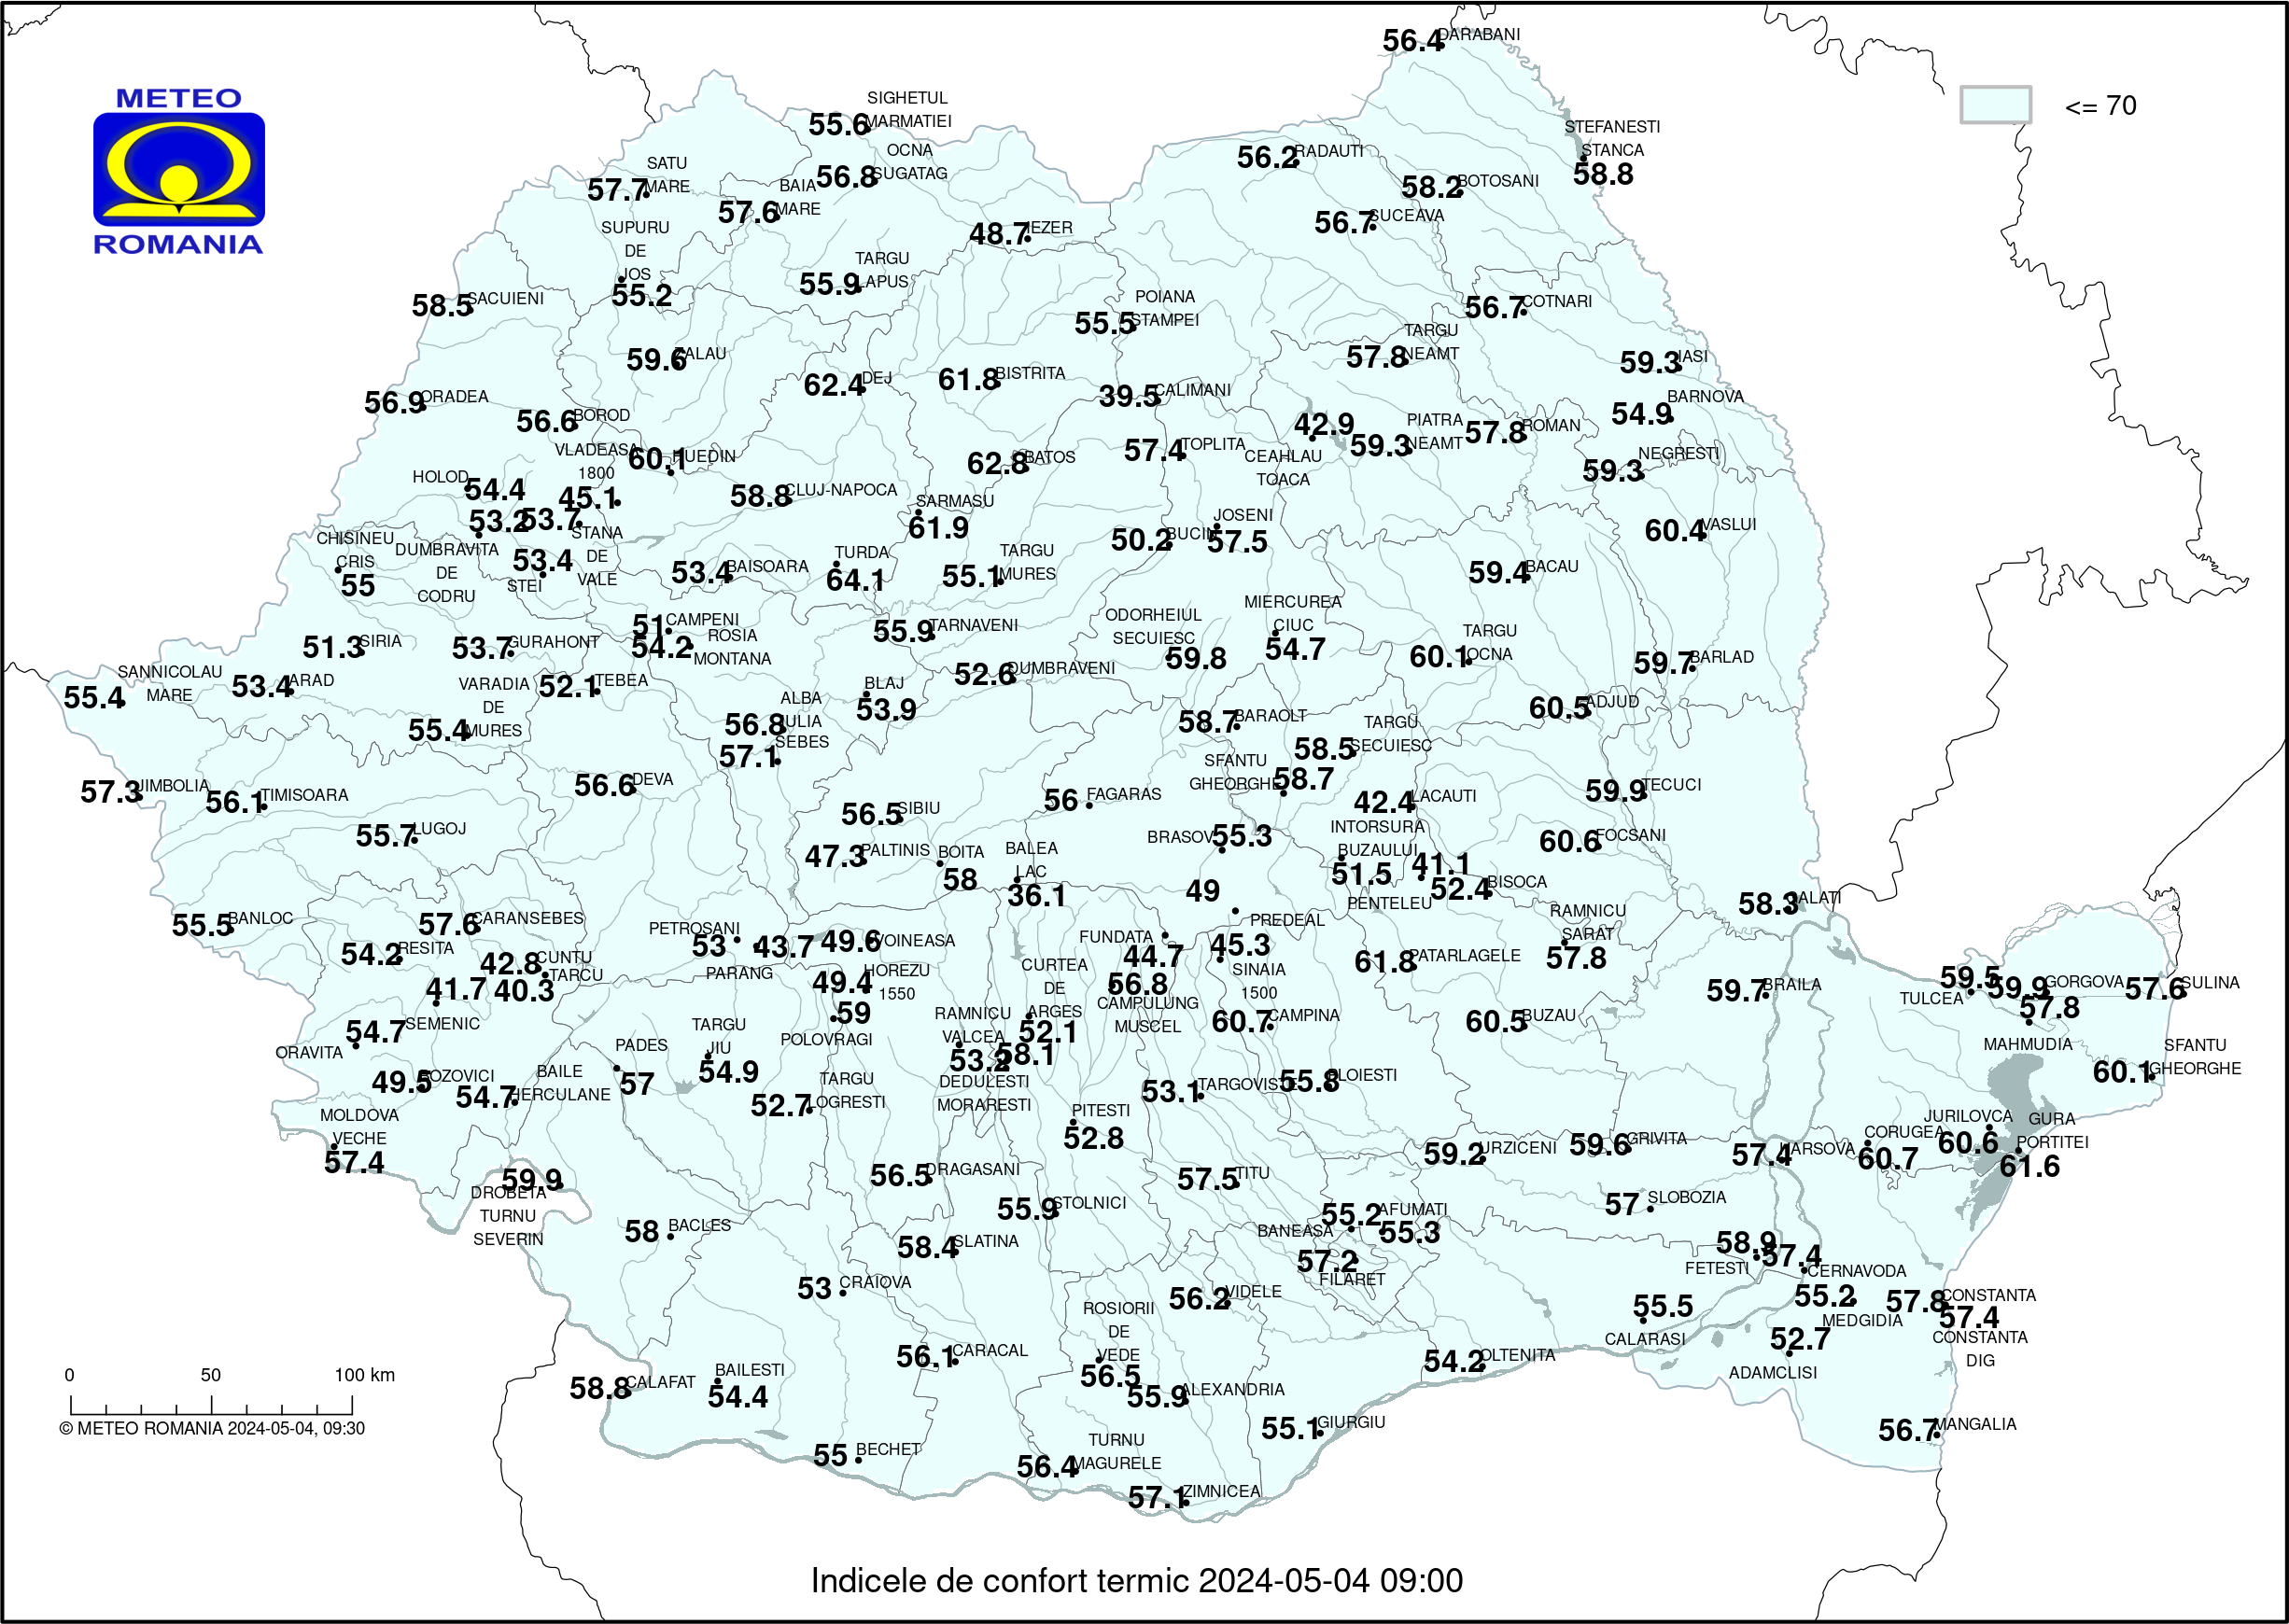 Temperaturi ora 14 #Romania (2 pm o'clock Romania temperature)